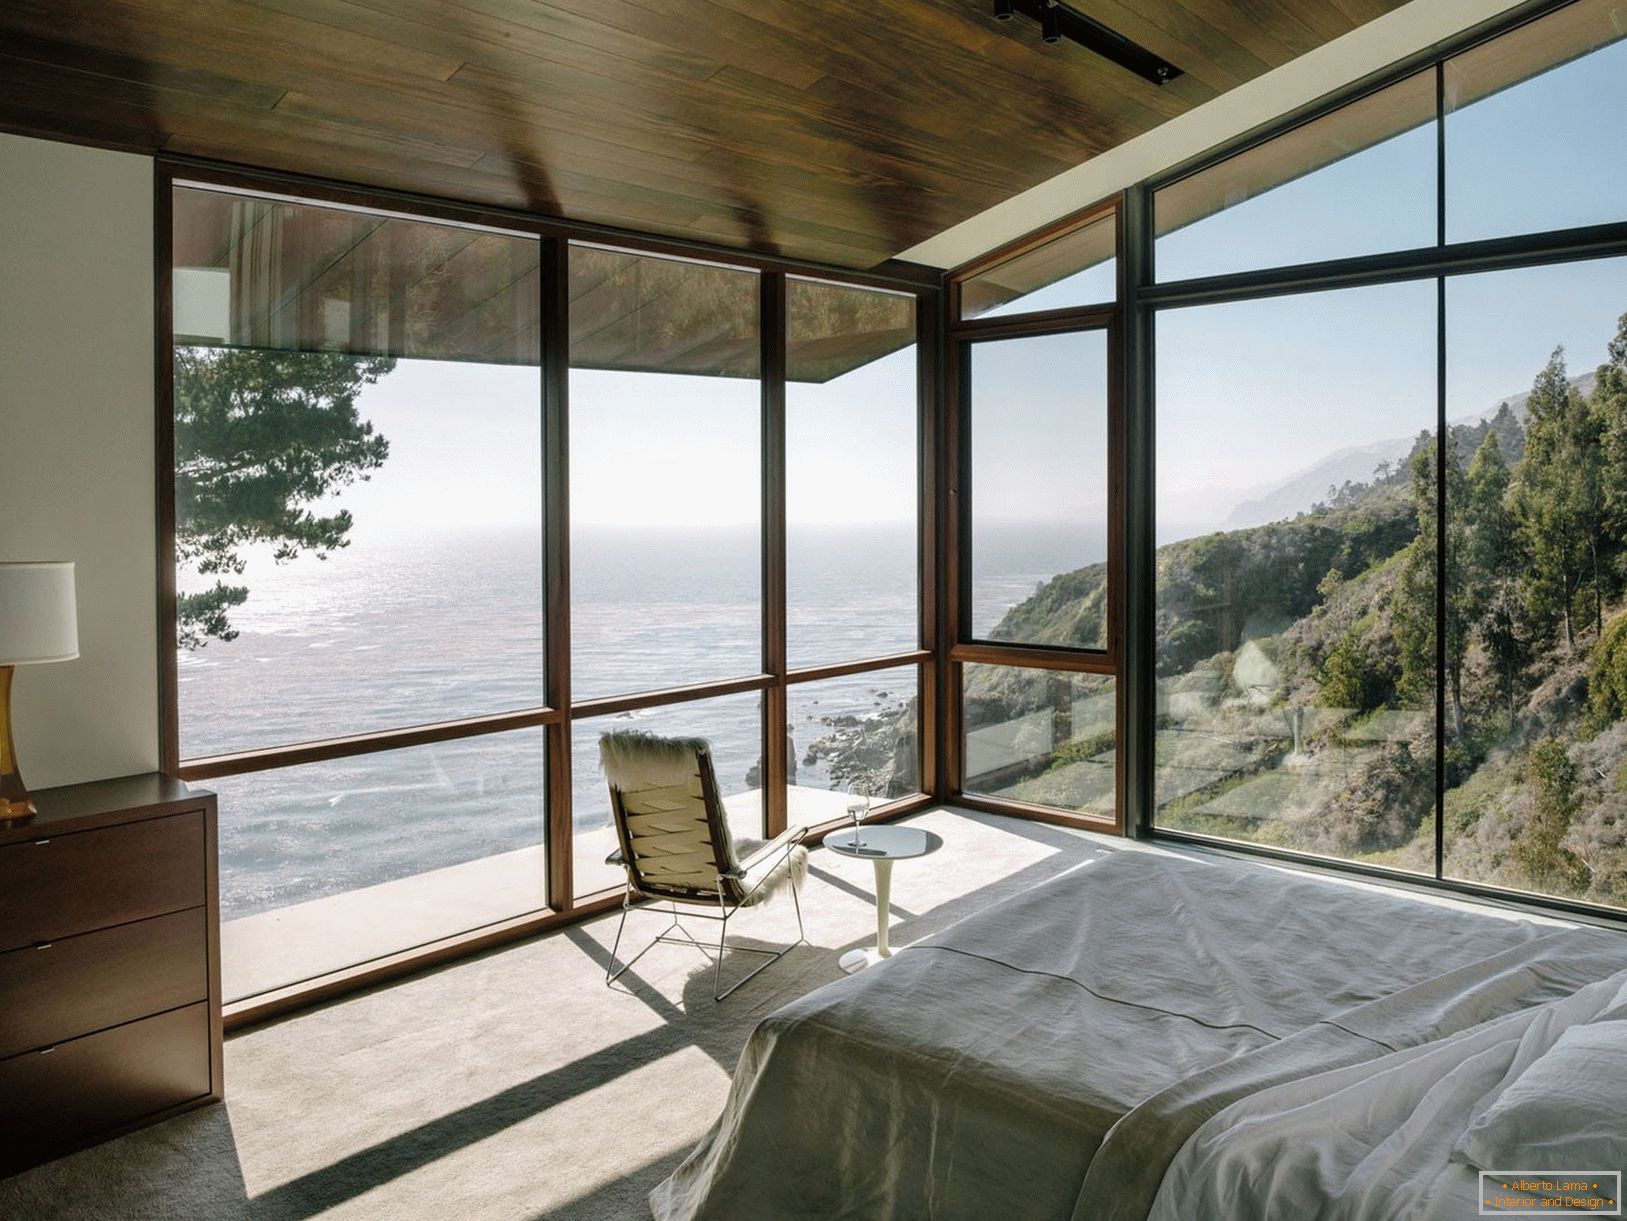 Panoramska okna s pogledom na morje